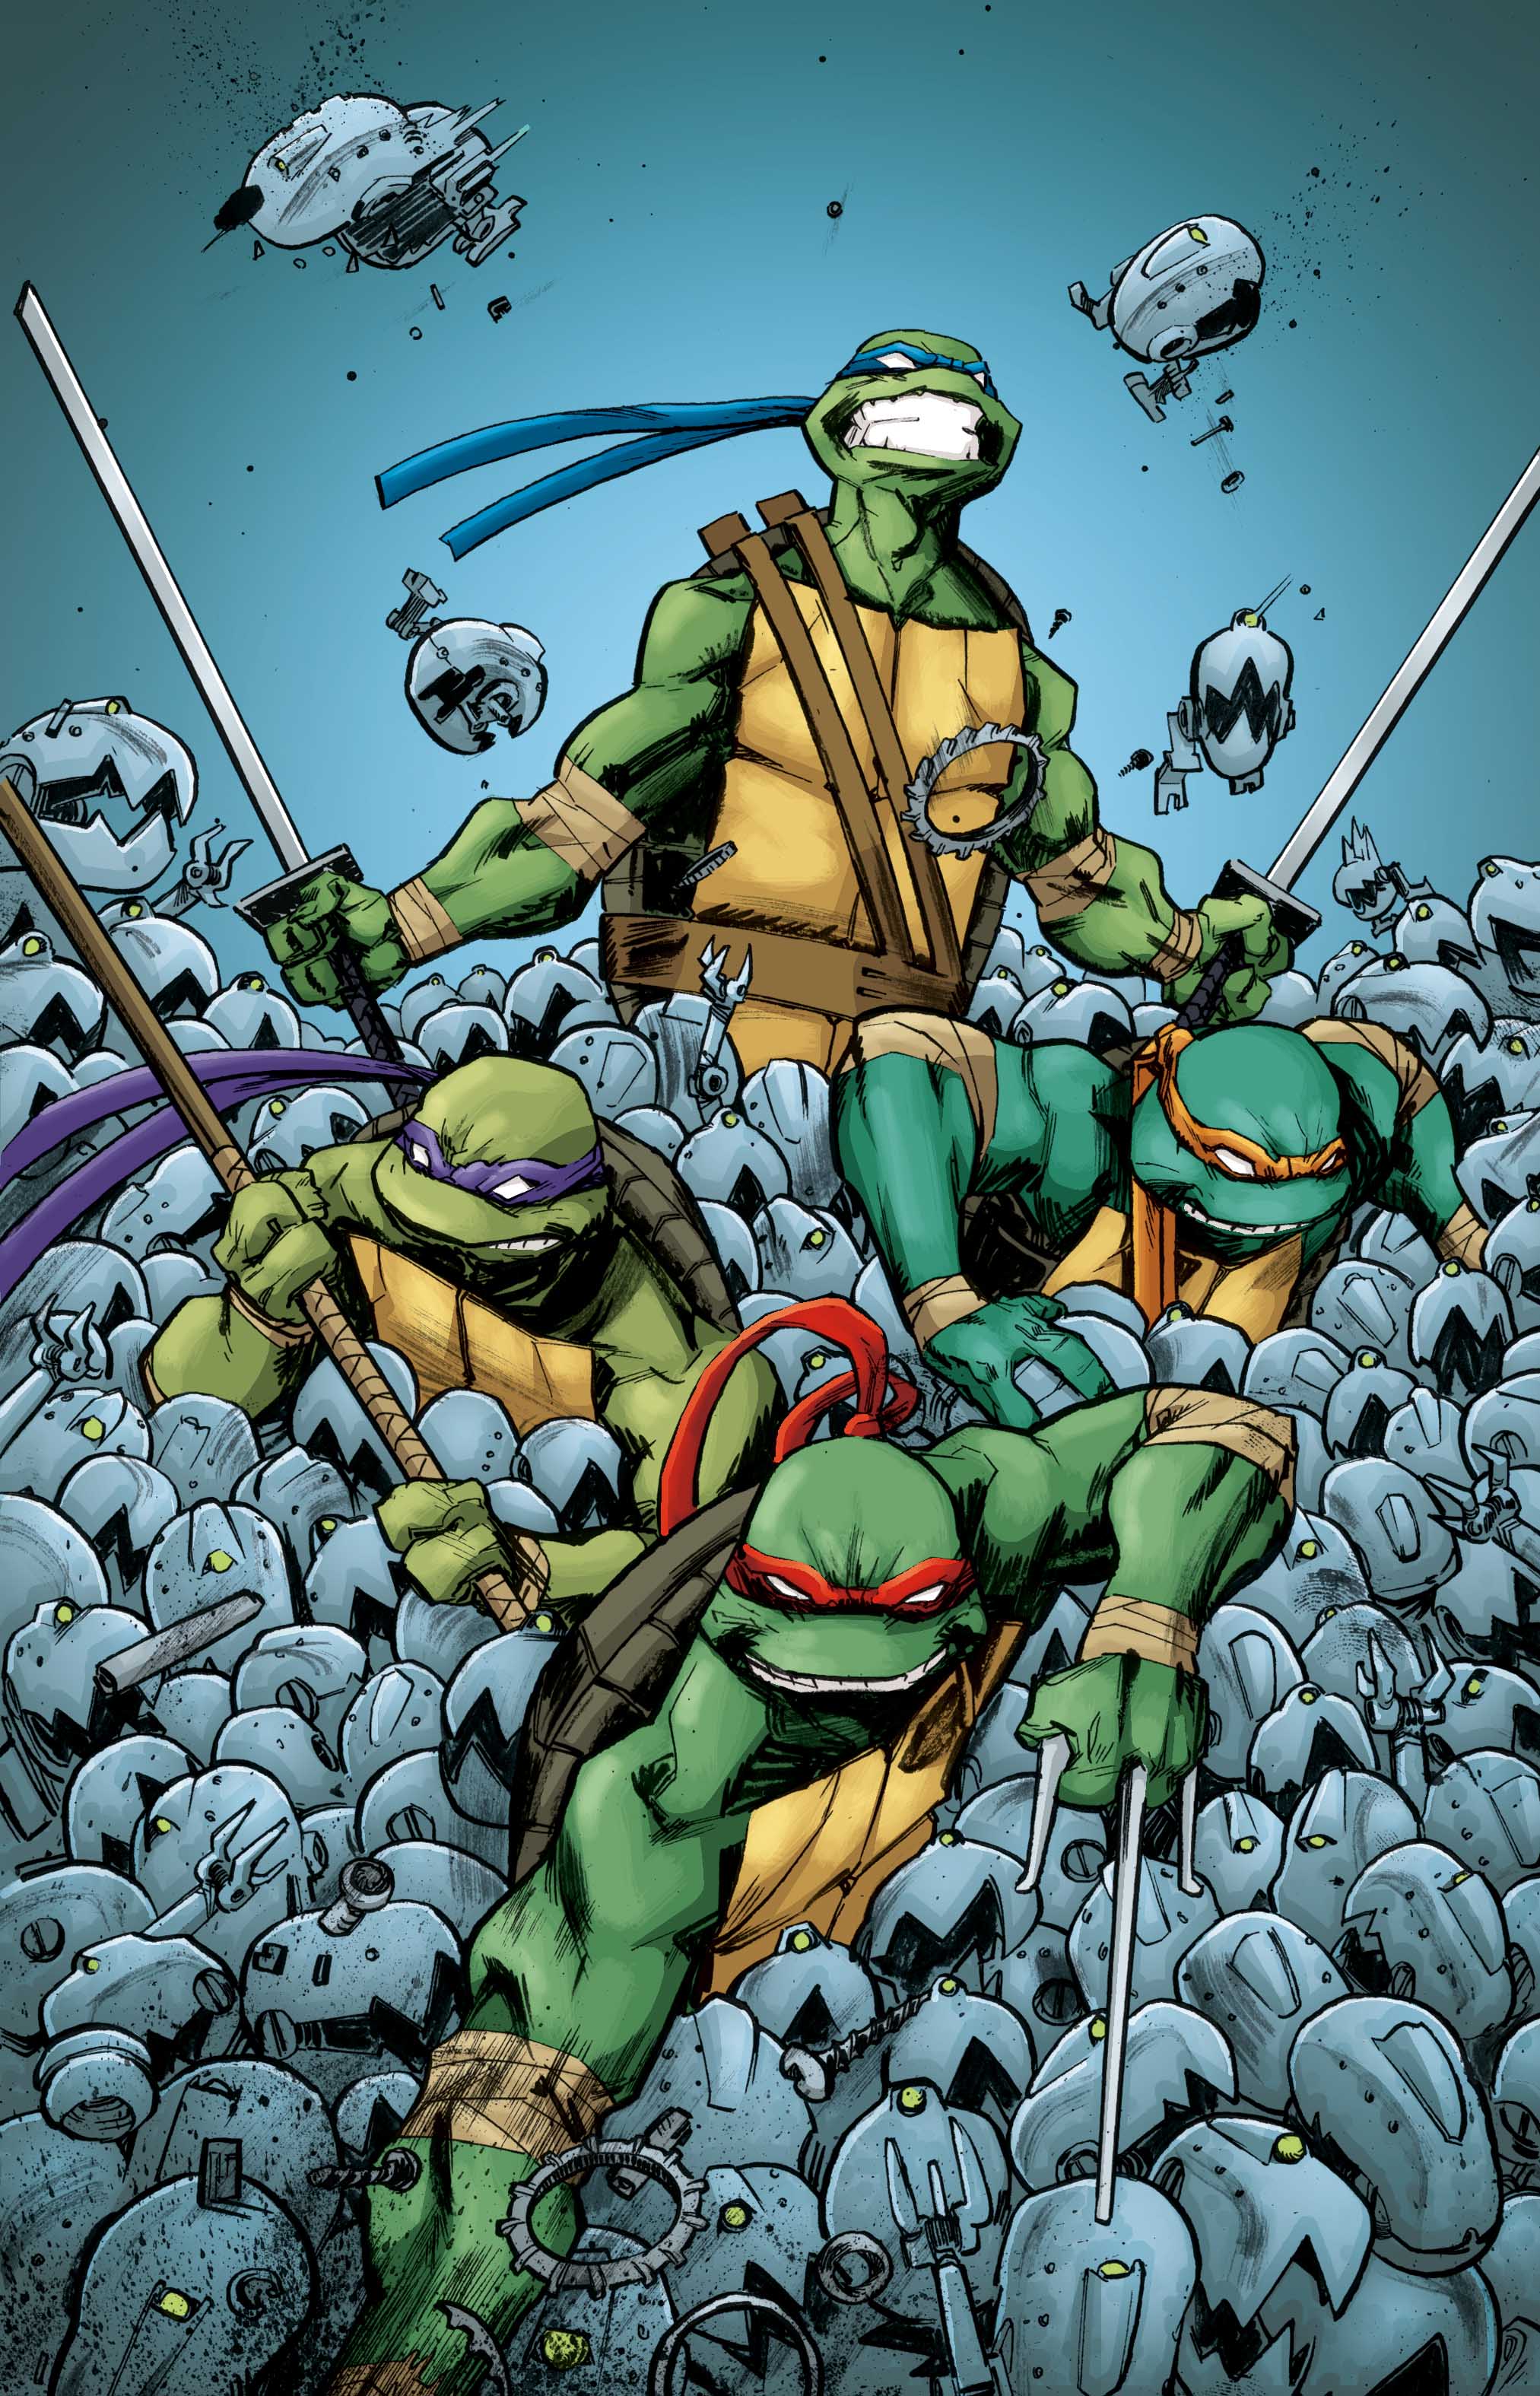 Teenage Mutant Ninja Turtles (TMNT) Cover a Duncan Background Image